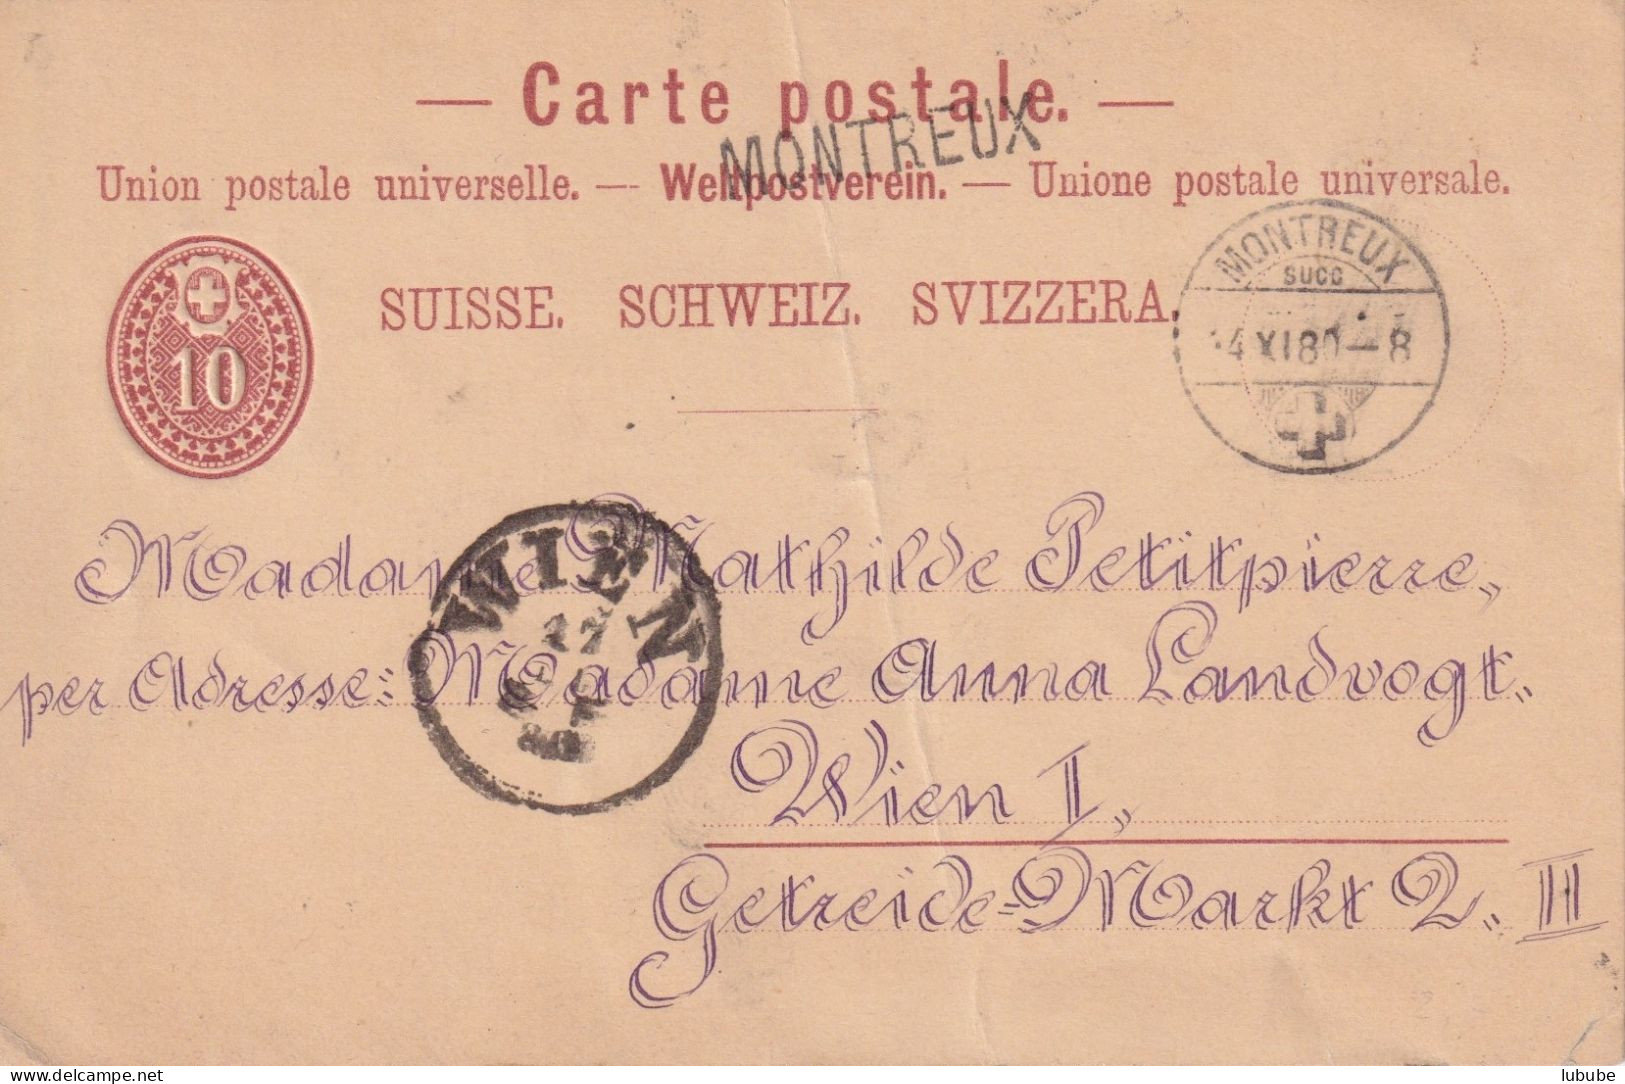 PK 14  Montreux Succ. - Wien  (Stabstempel)          1880 - Enteros Postales